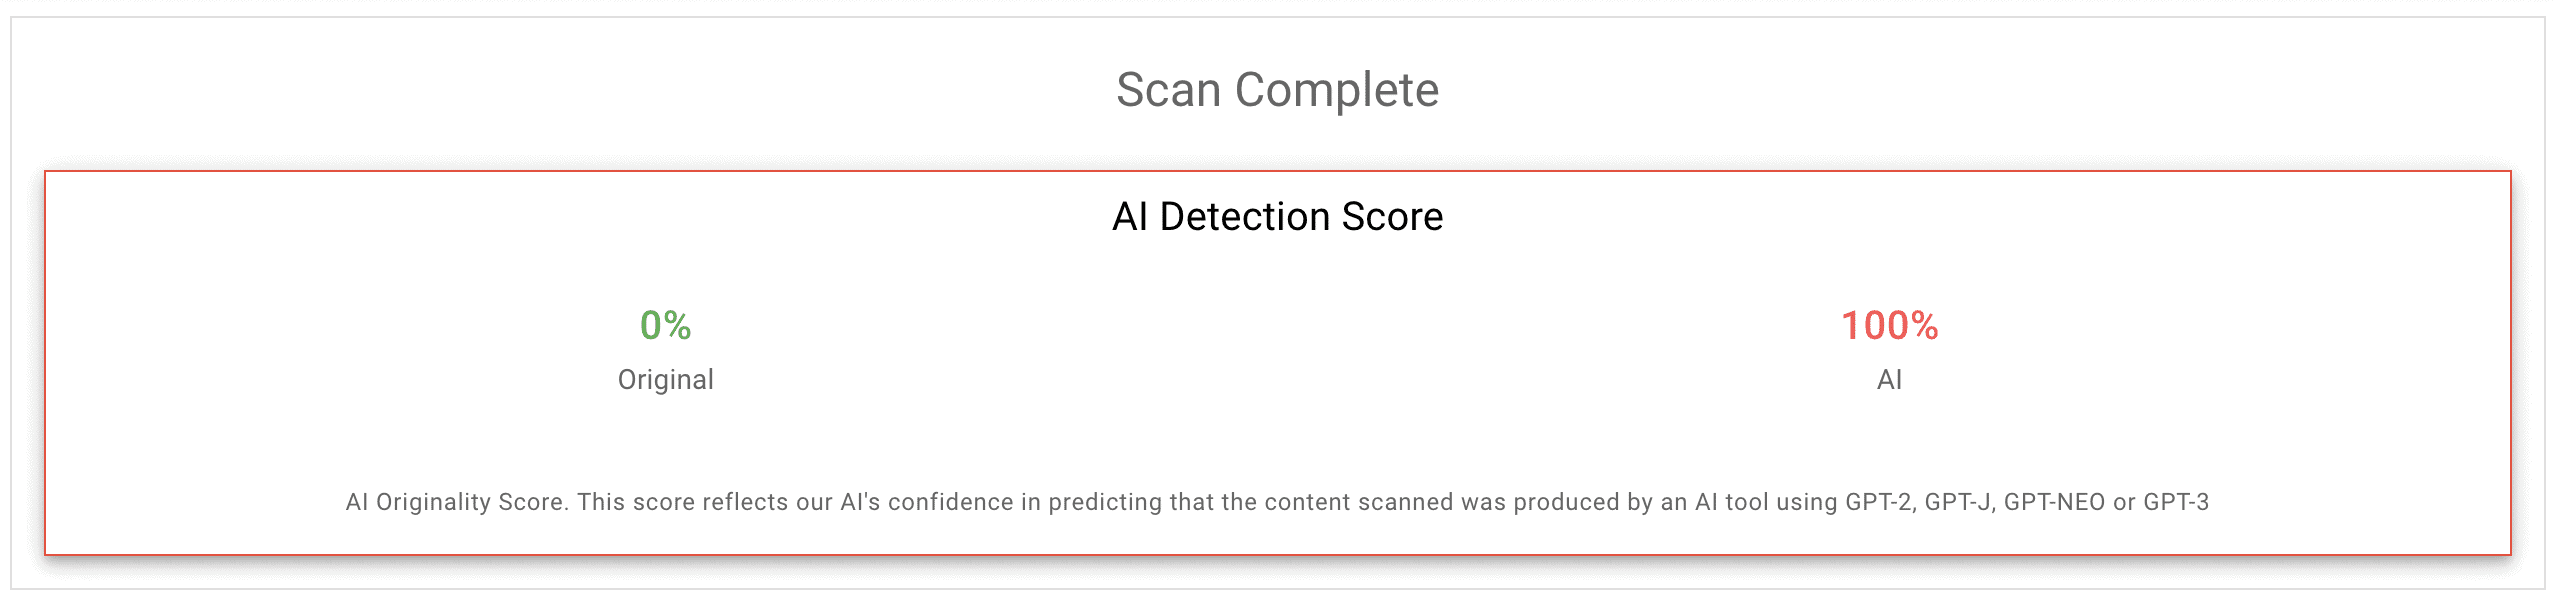 Initial Originality.ai AI Detection (100% AI, 0% original)